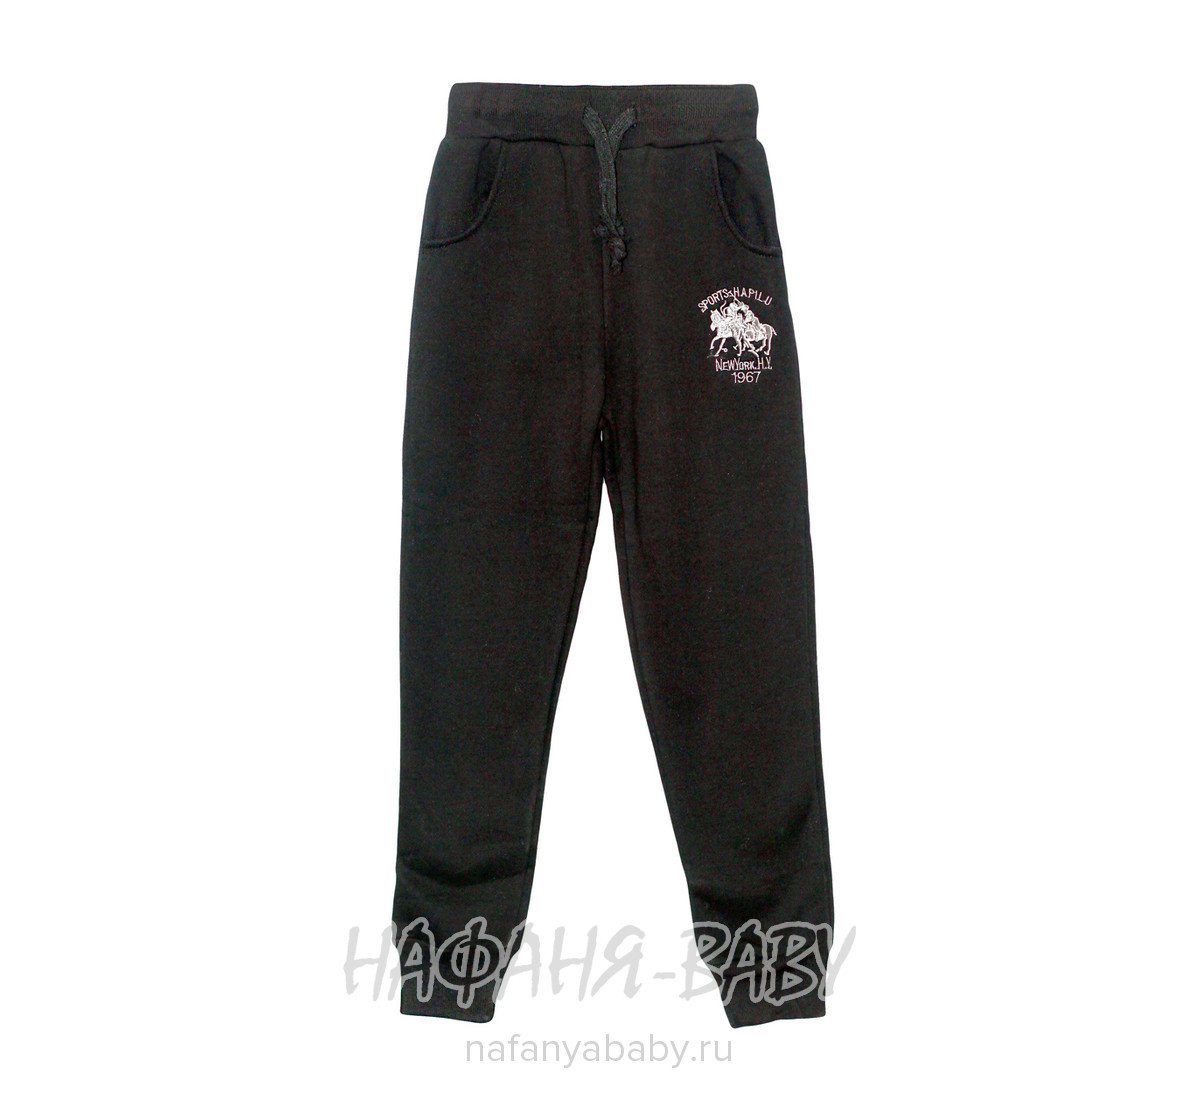 Детские брюки VIVID BASIC арт: 2096, 5-9 лет, 10-15 лет, цвет черный, оптом Китай (Пекин)